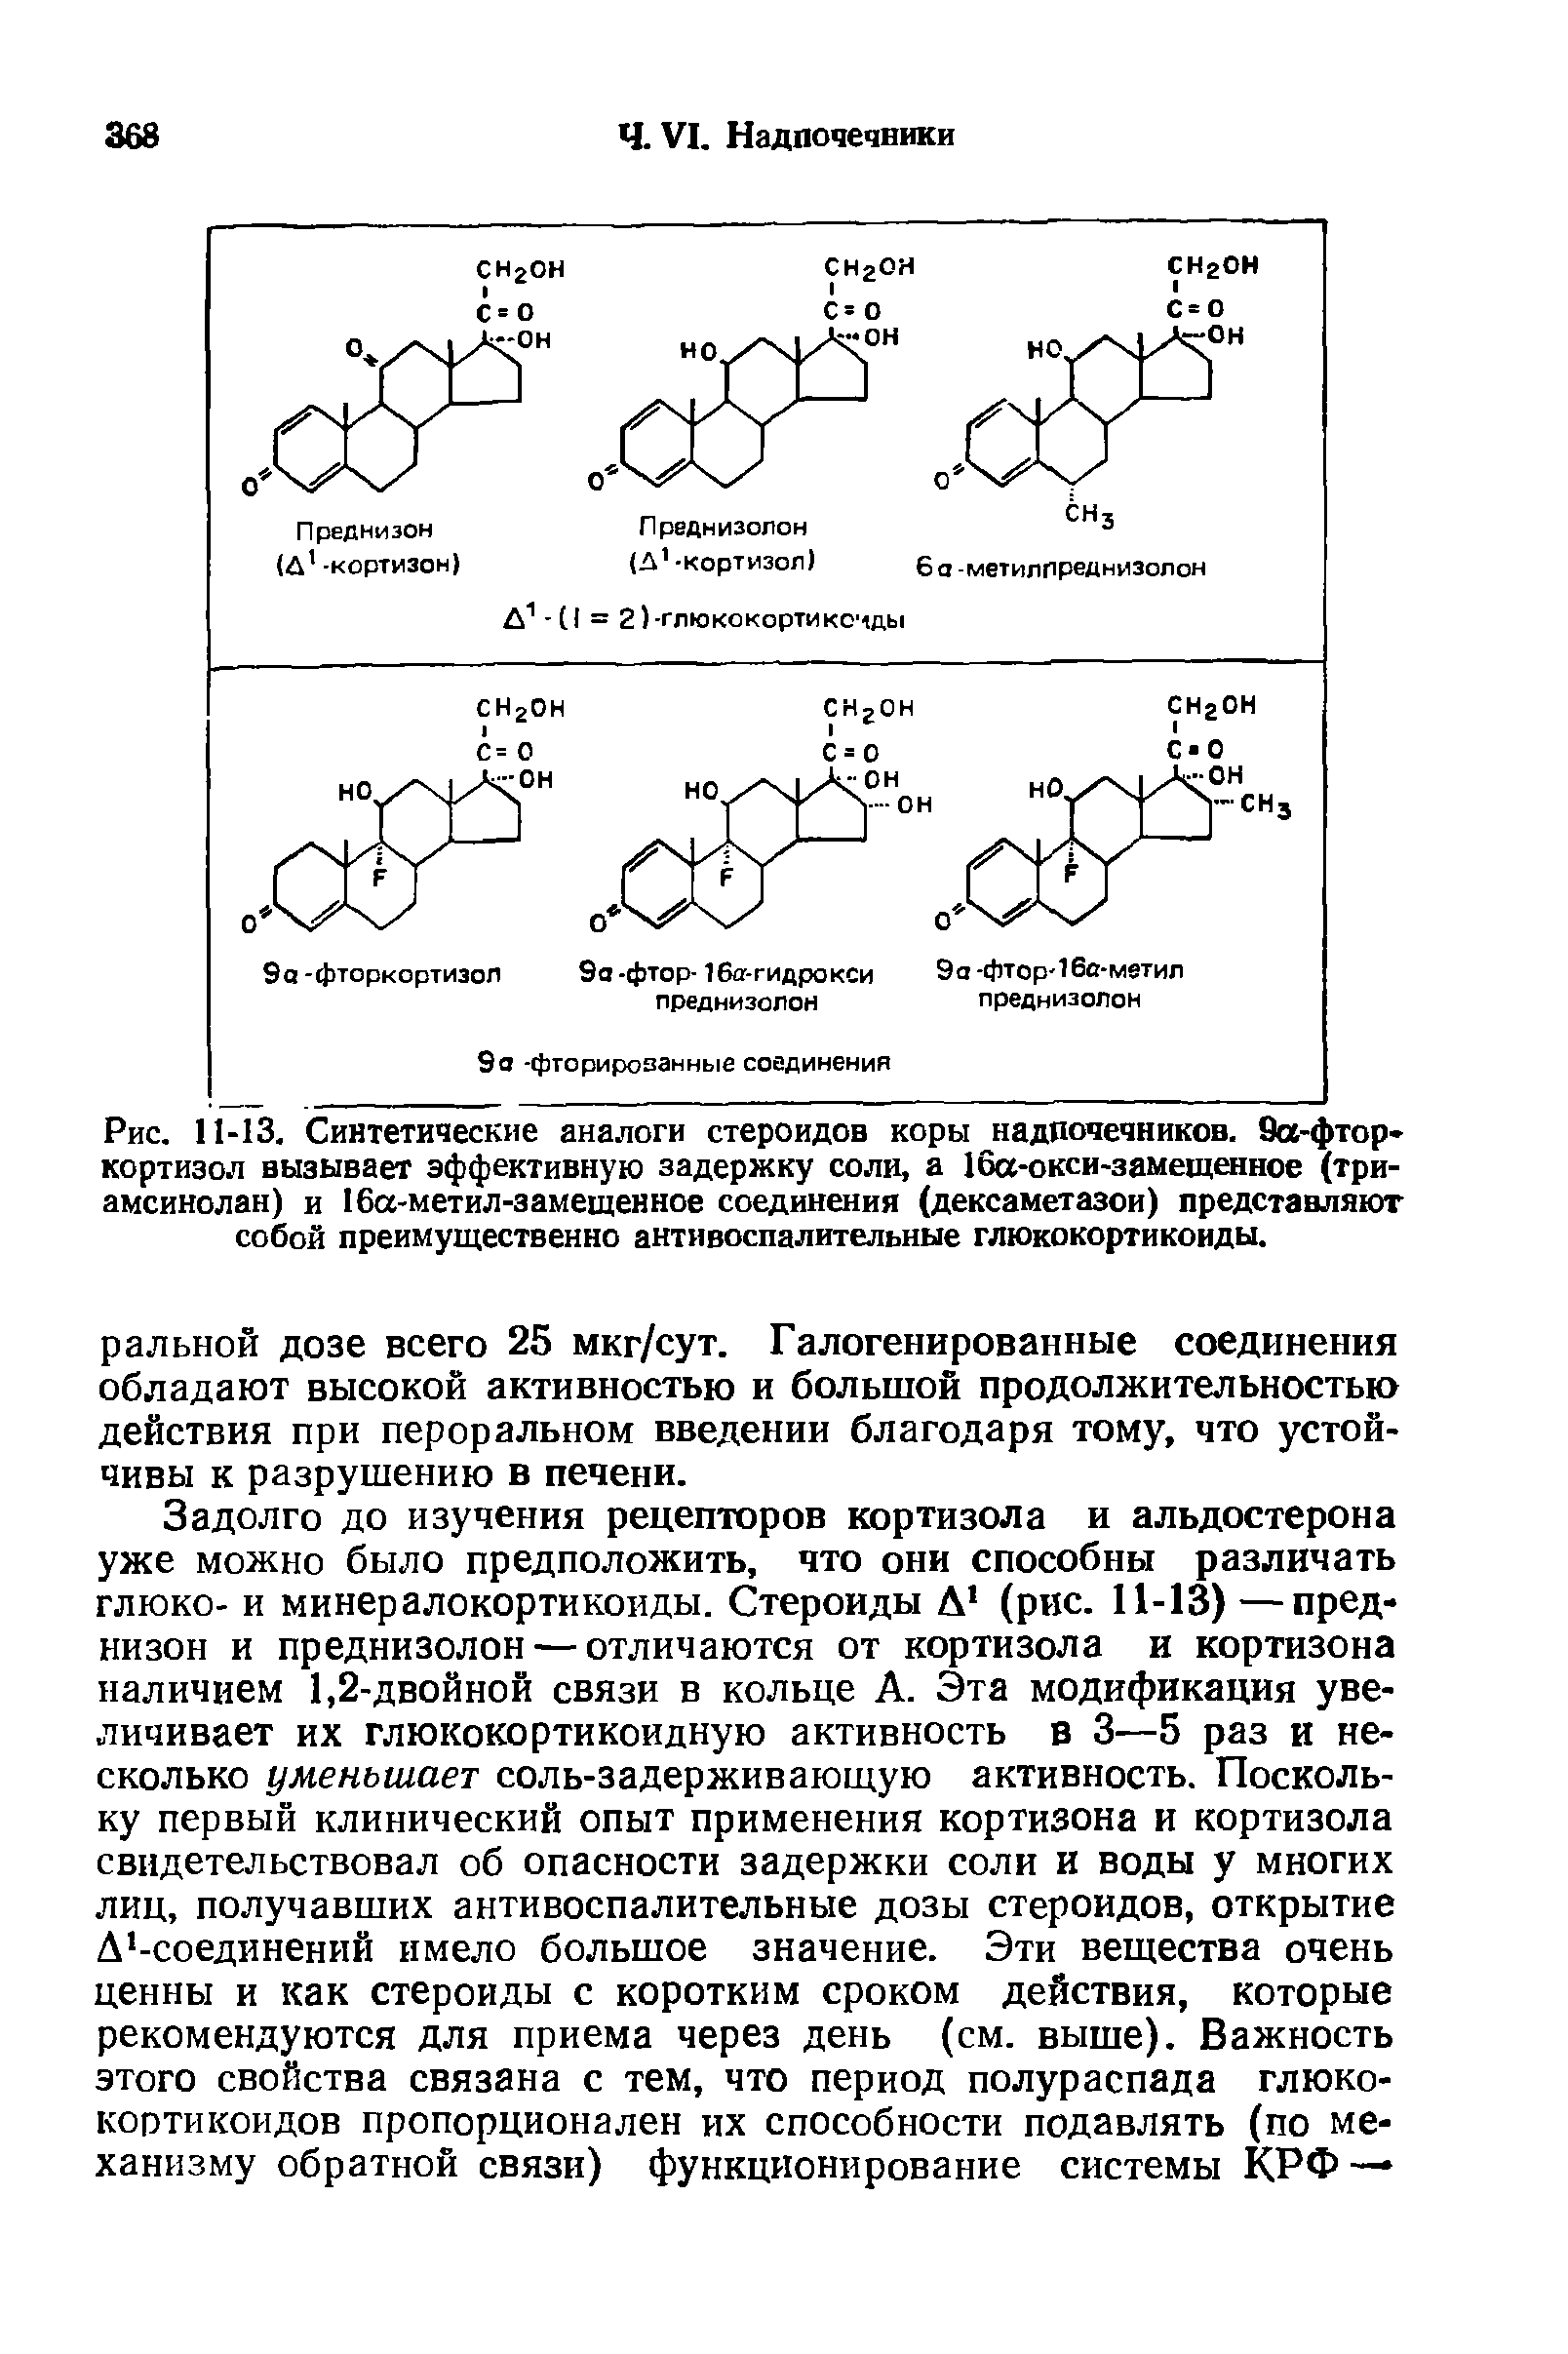 Рис. 11-13. Синтетические аналоги стероидов коры надпочечников. 9а-фтор кортизол вызывает эффективную задержку соли, а 16а-окси-замещенное (три-амсинолан) и 16а-метил-замещенное соединения (дексаметазон) представляют собой преимущественно антивоспалительные глюкокортикоиды.